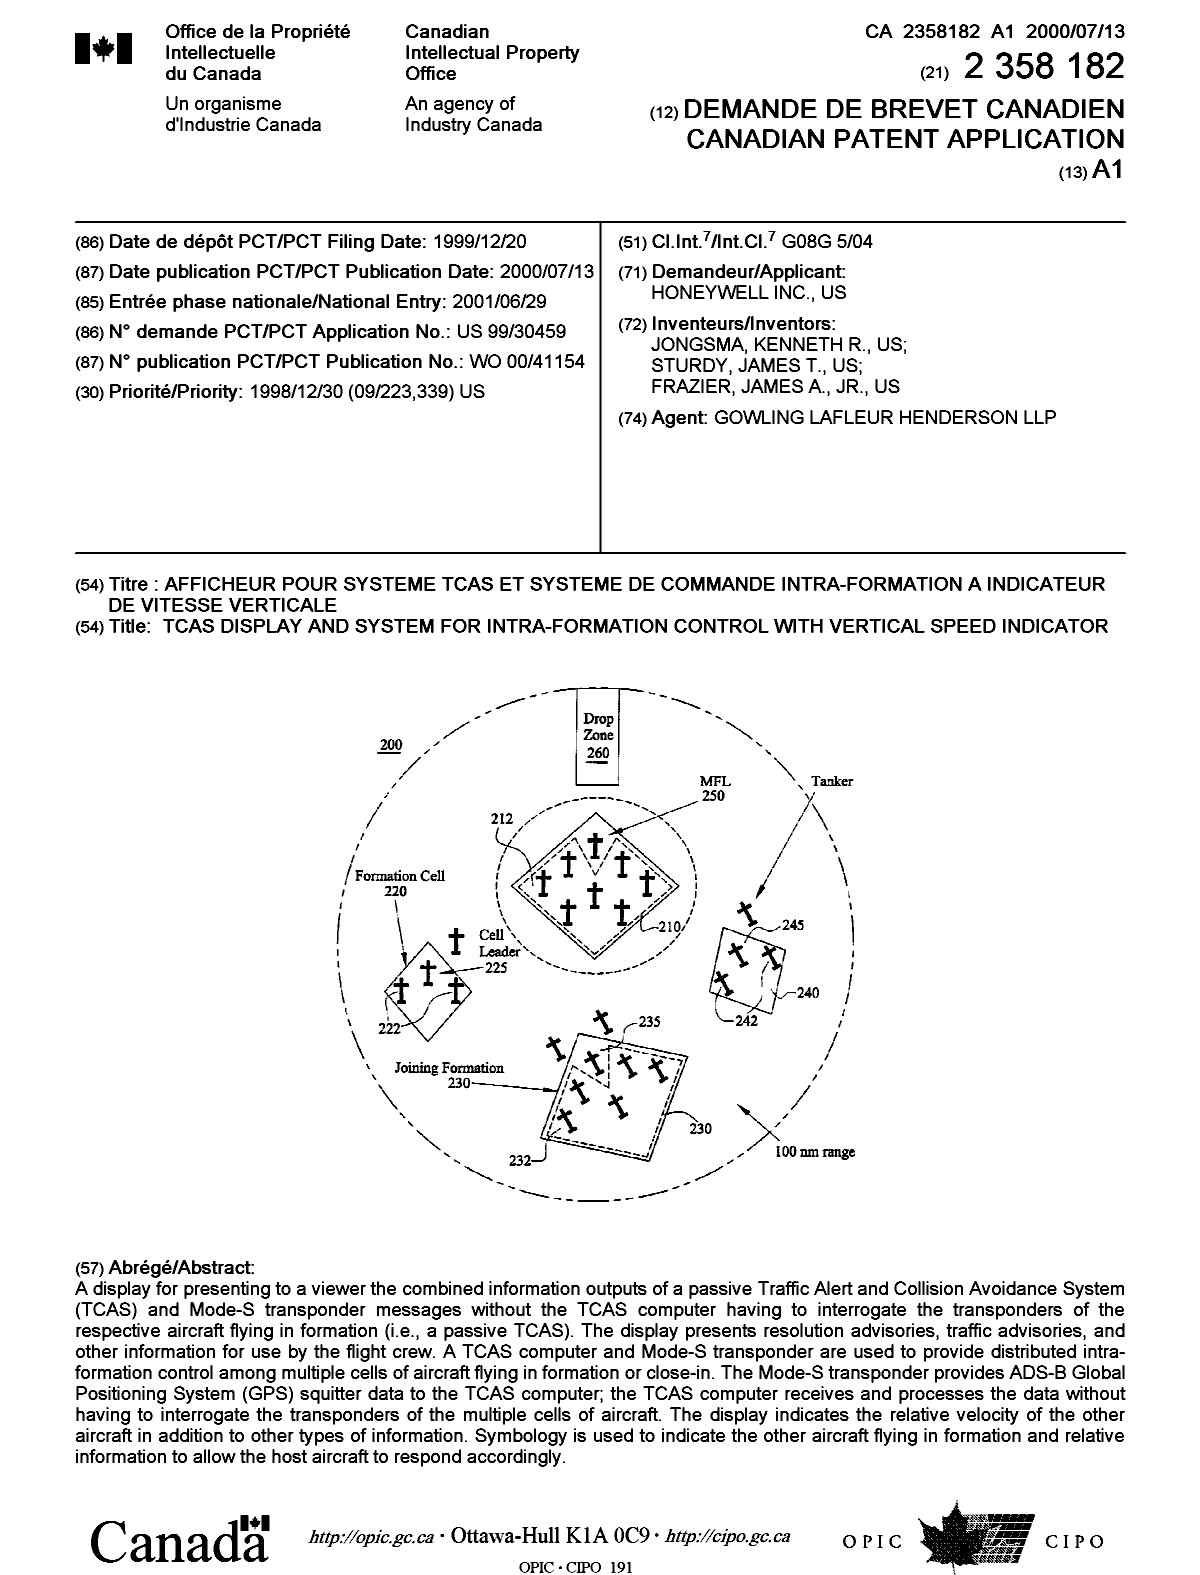 Document de brevet canadien 2358182. Page couverture 20011116. Image 1 de 1